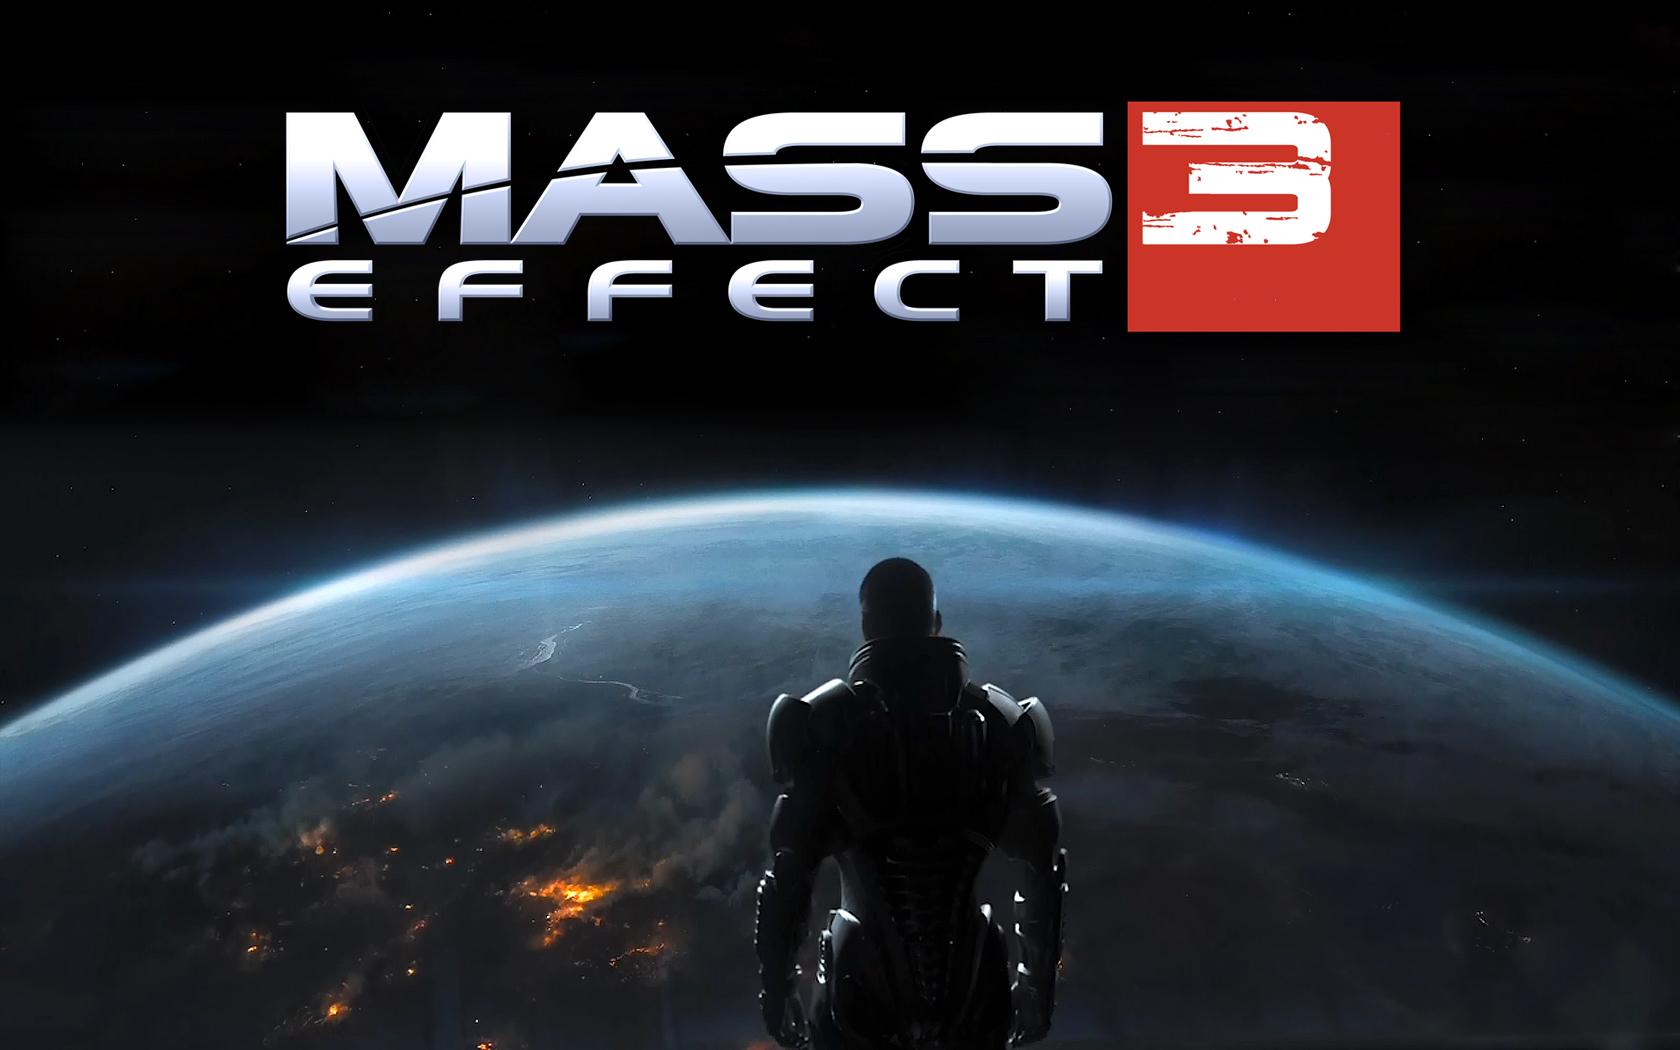 Đam mê game Mass Effect 3? Đừng bỏ lỡ cơ hội tải ảnh nền của game để trang trí cho máy tính của bạn! Hình ảnh chất lượng cao, sắc nét sẽ đưa bạn đến với những thế giới tuyệt đẹp của Mass Effect.